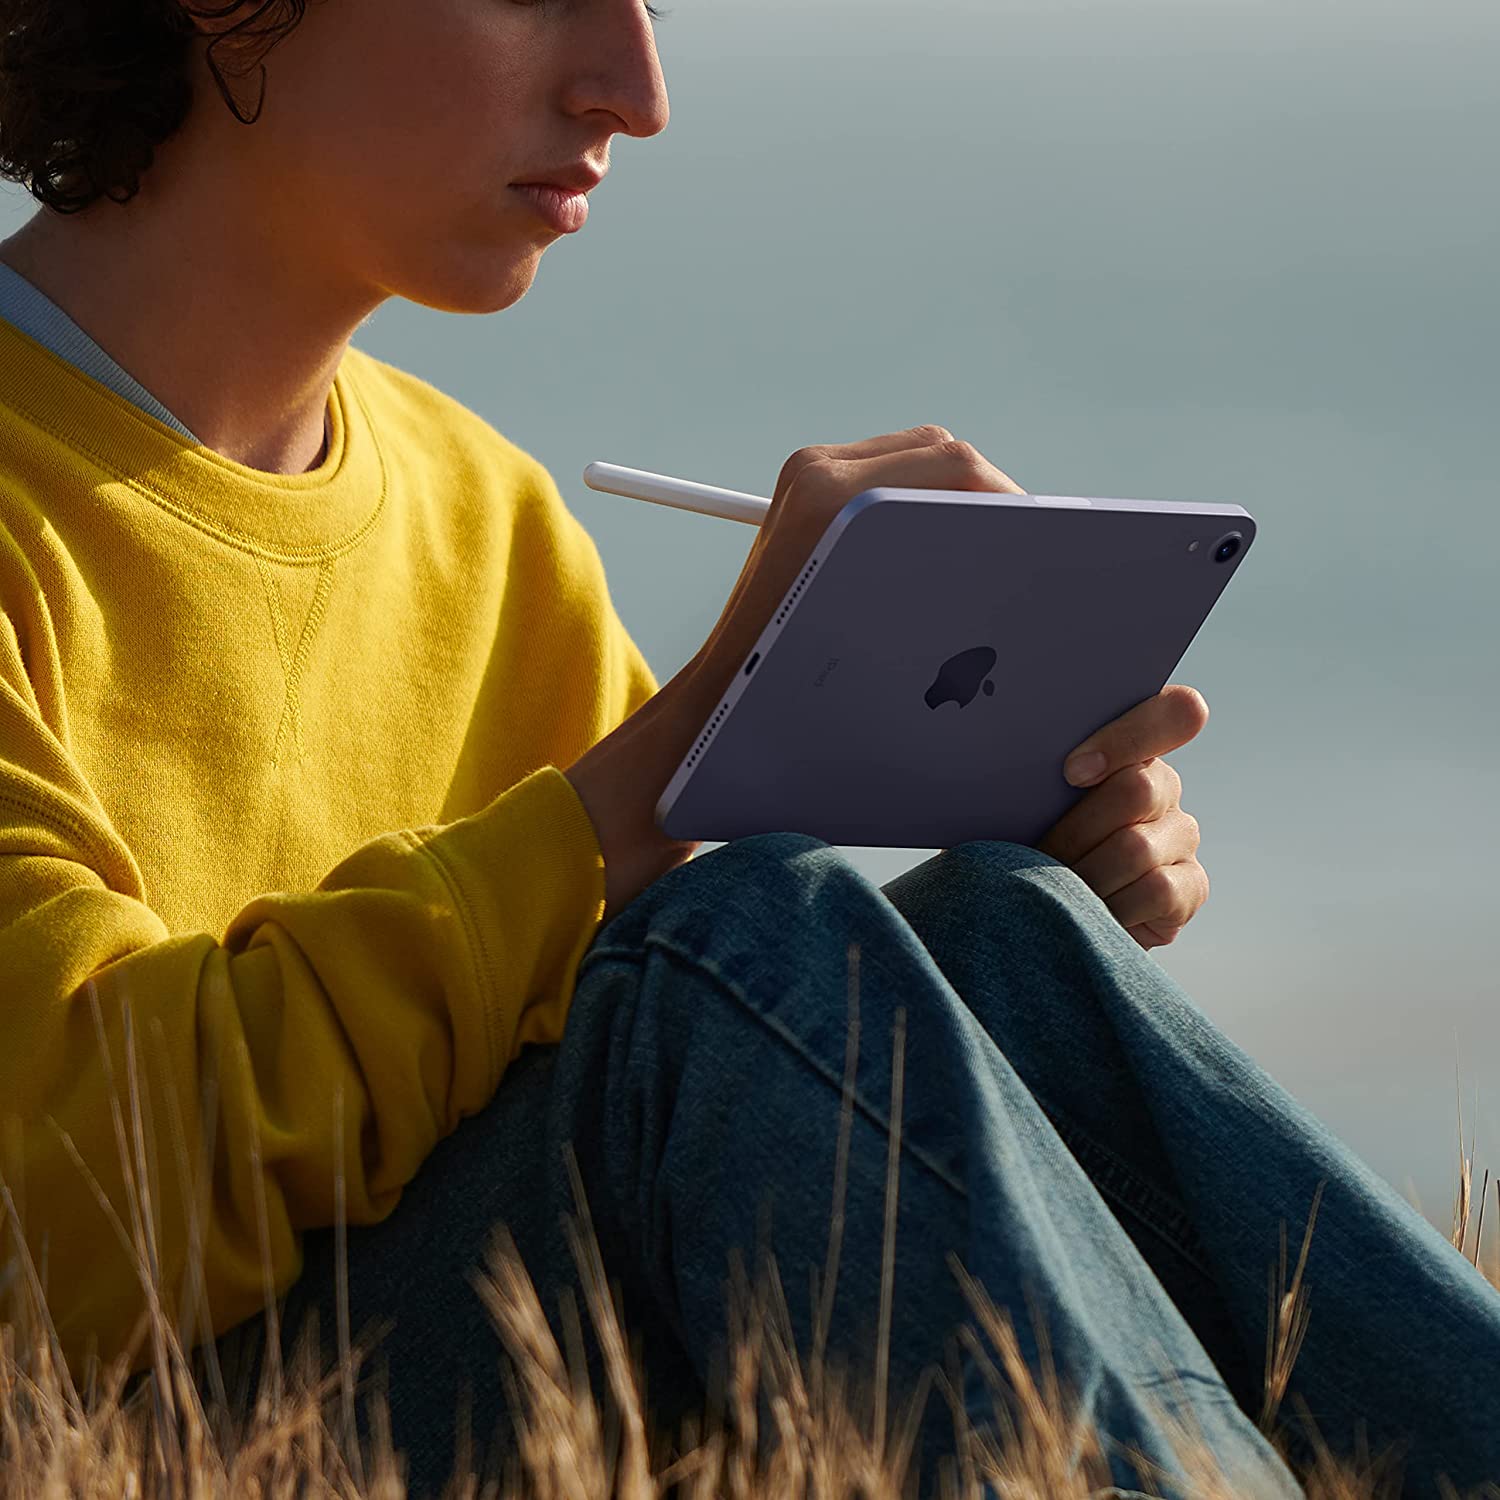 Apple iPad Mini 6 (64GB, Wi-Fi, Space Gray) Bundle with Purple Moroccan Sleeve